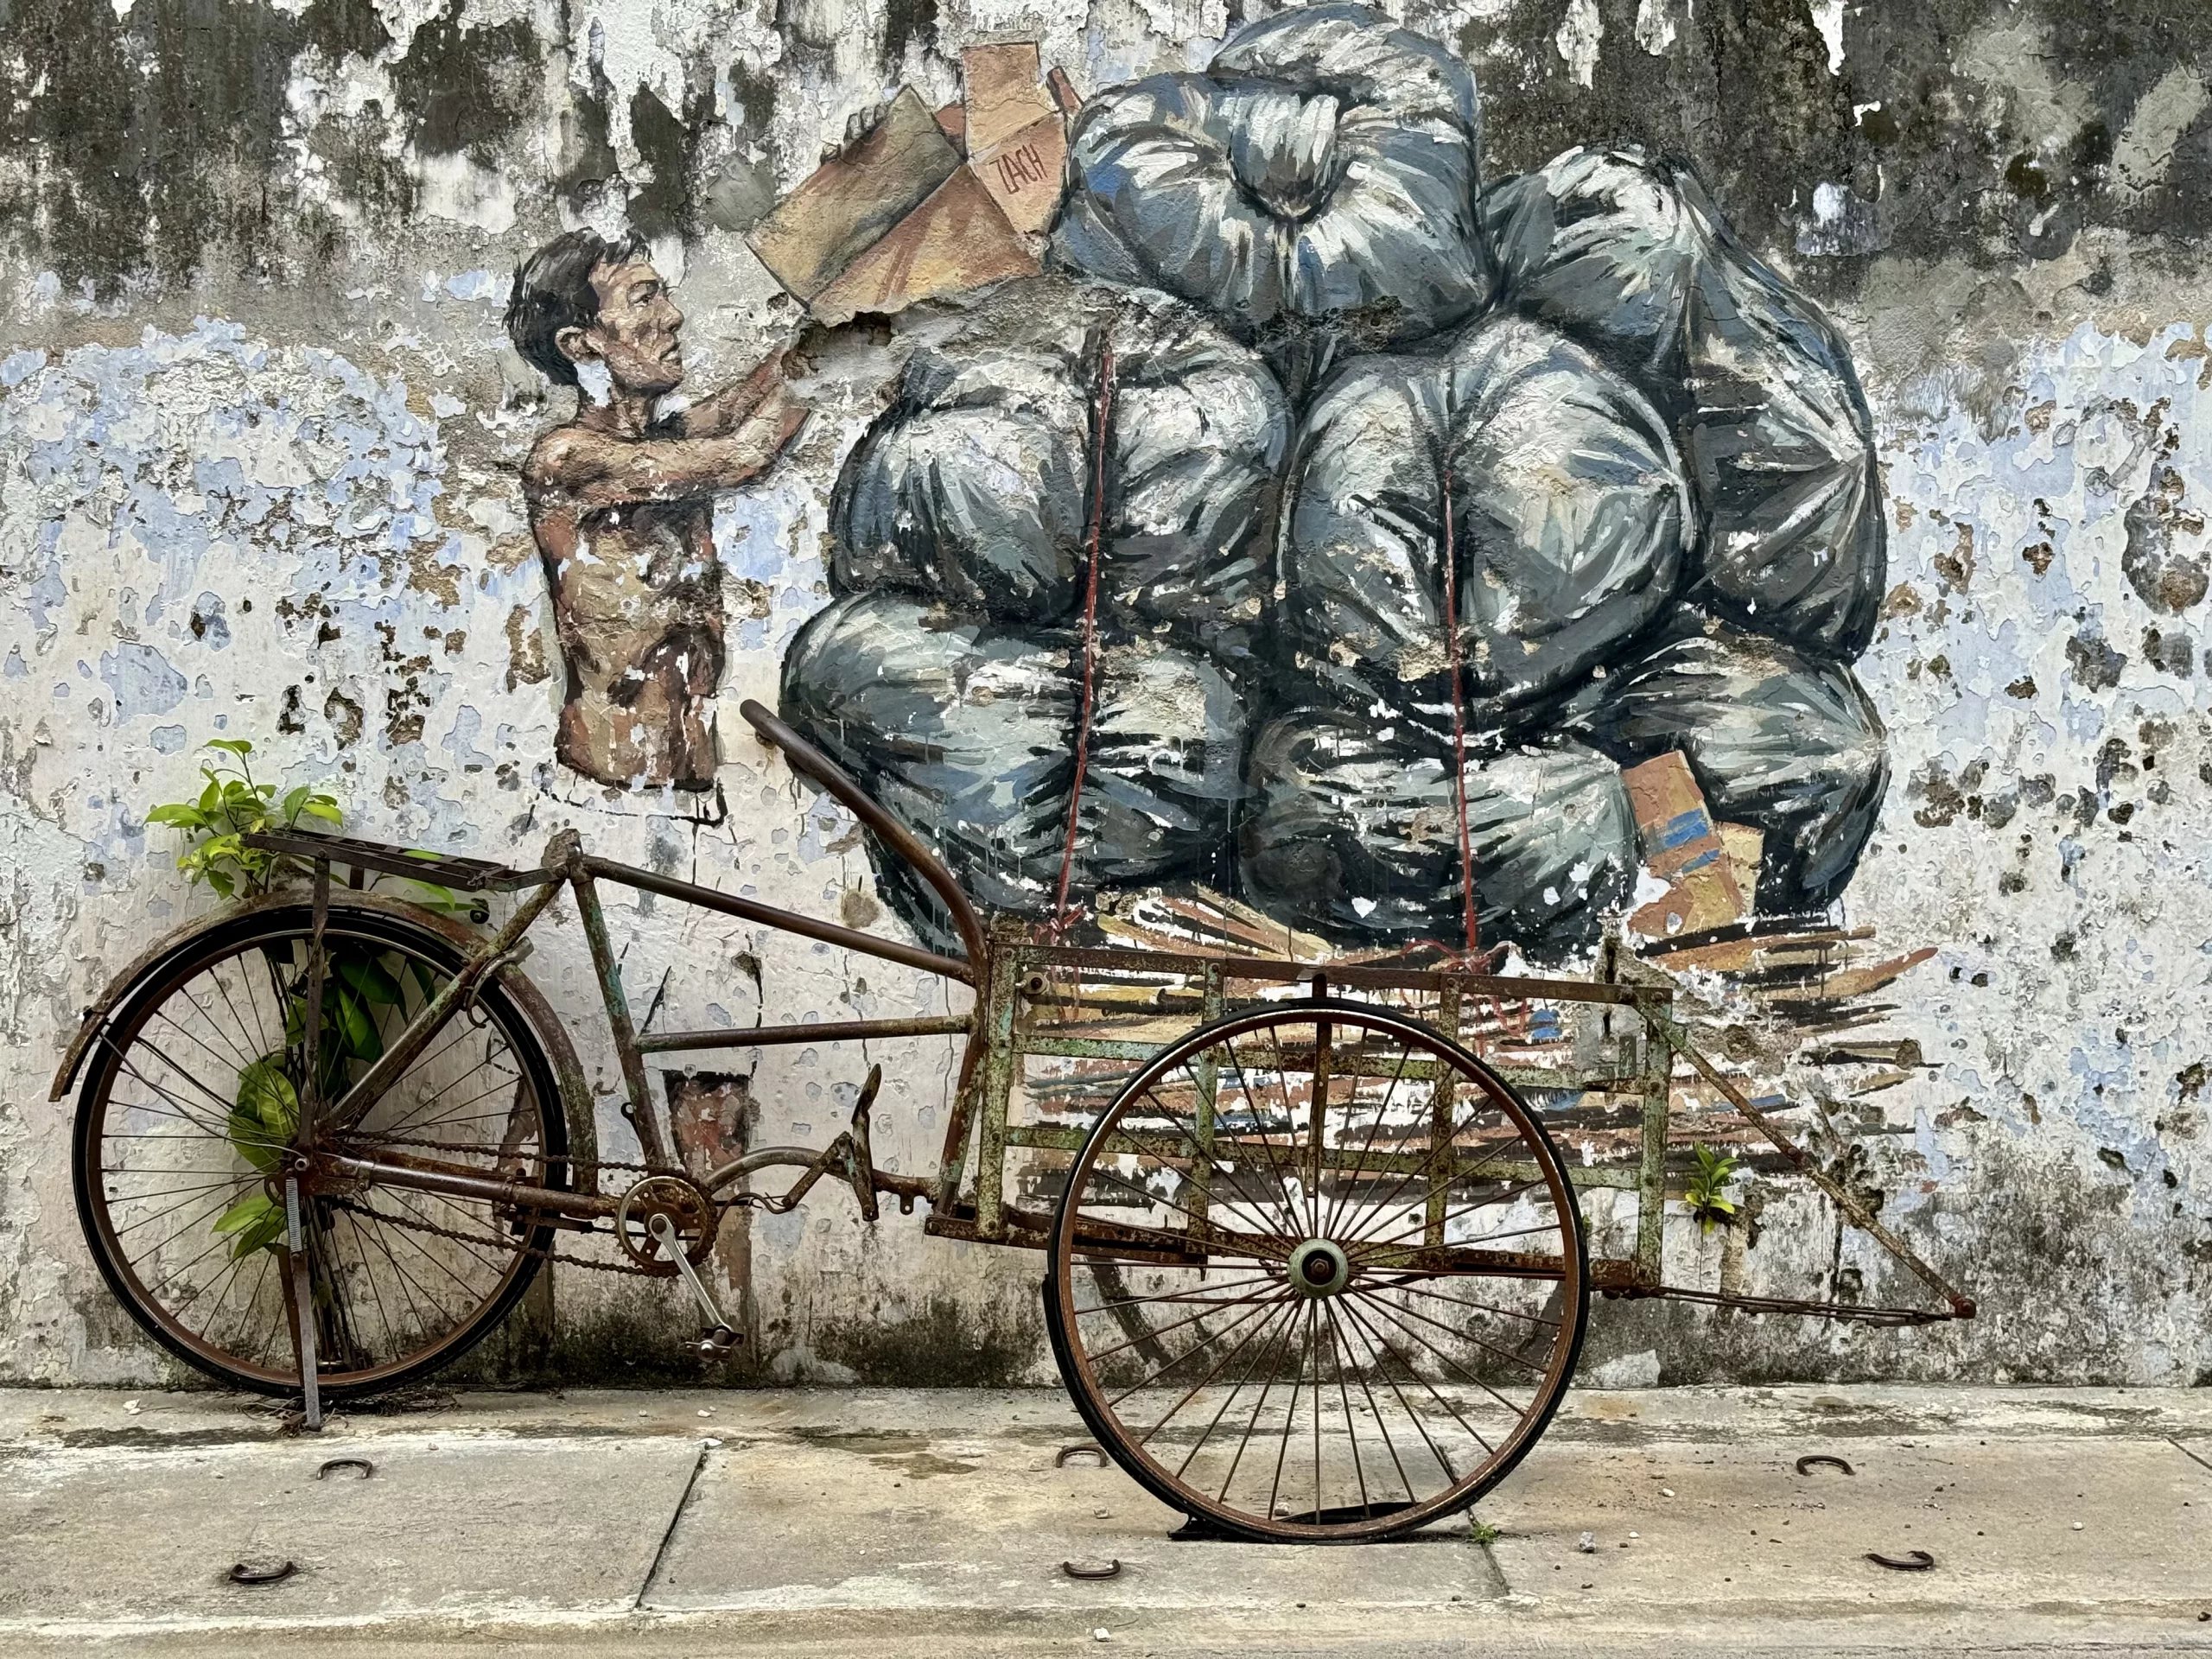 Street art in Ipoh, Perak, Malaysia